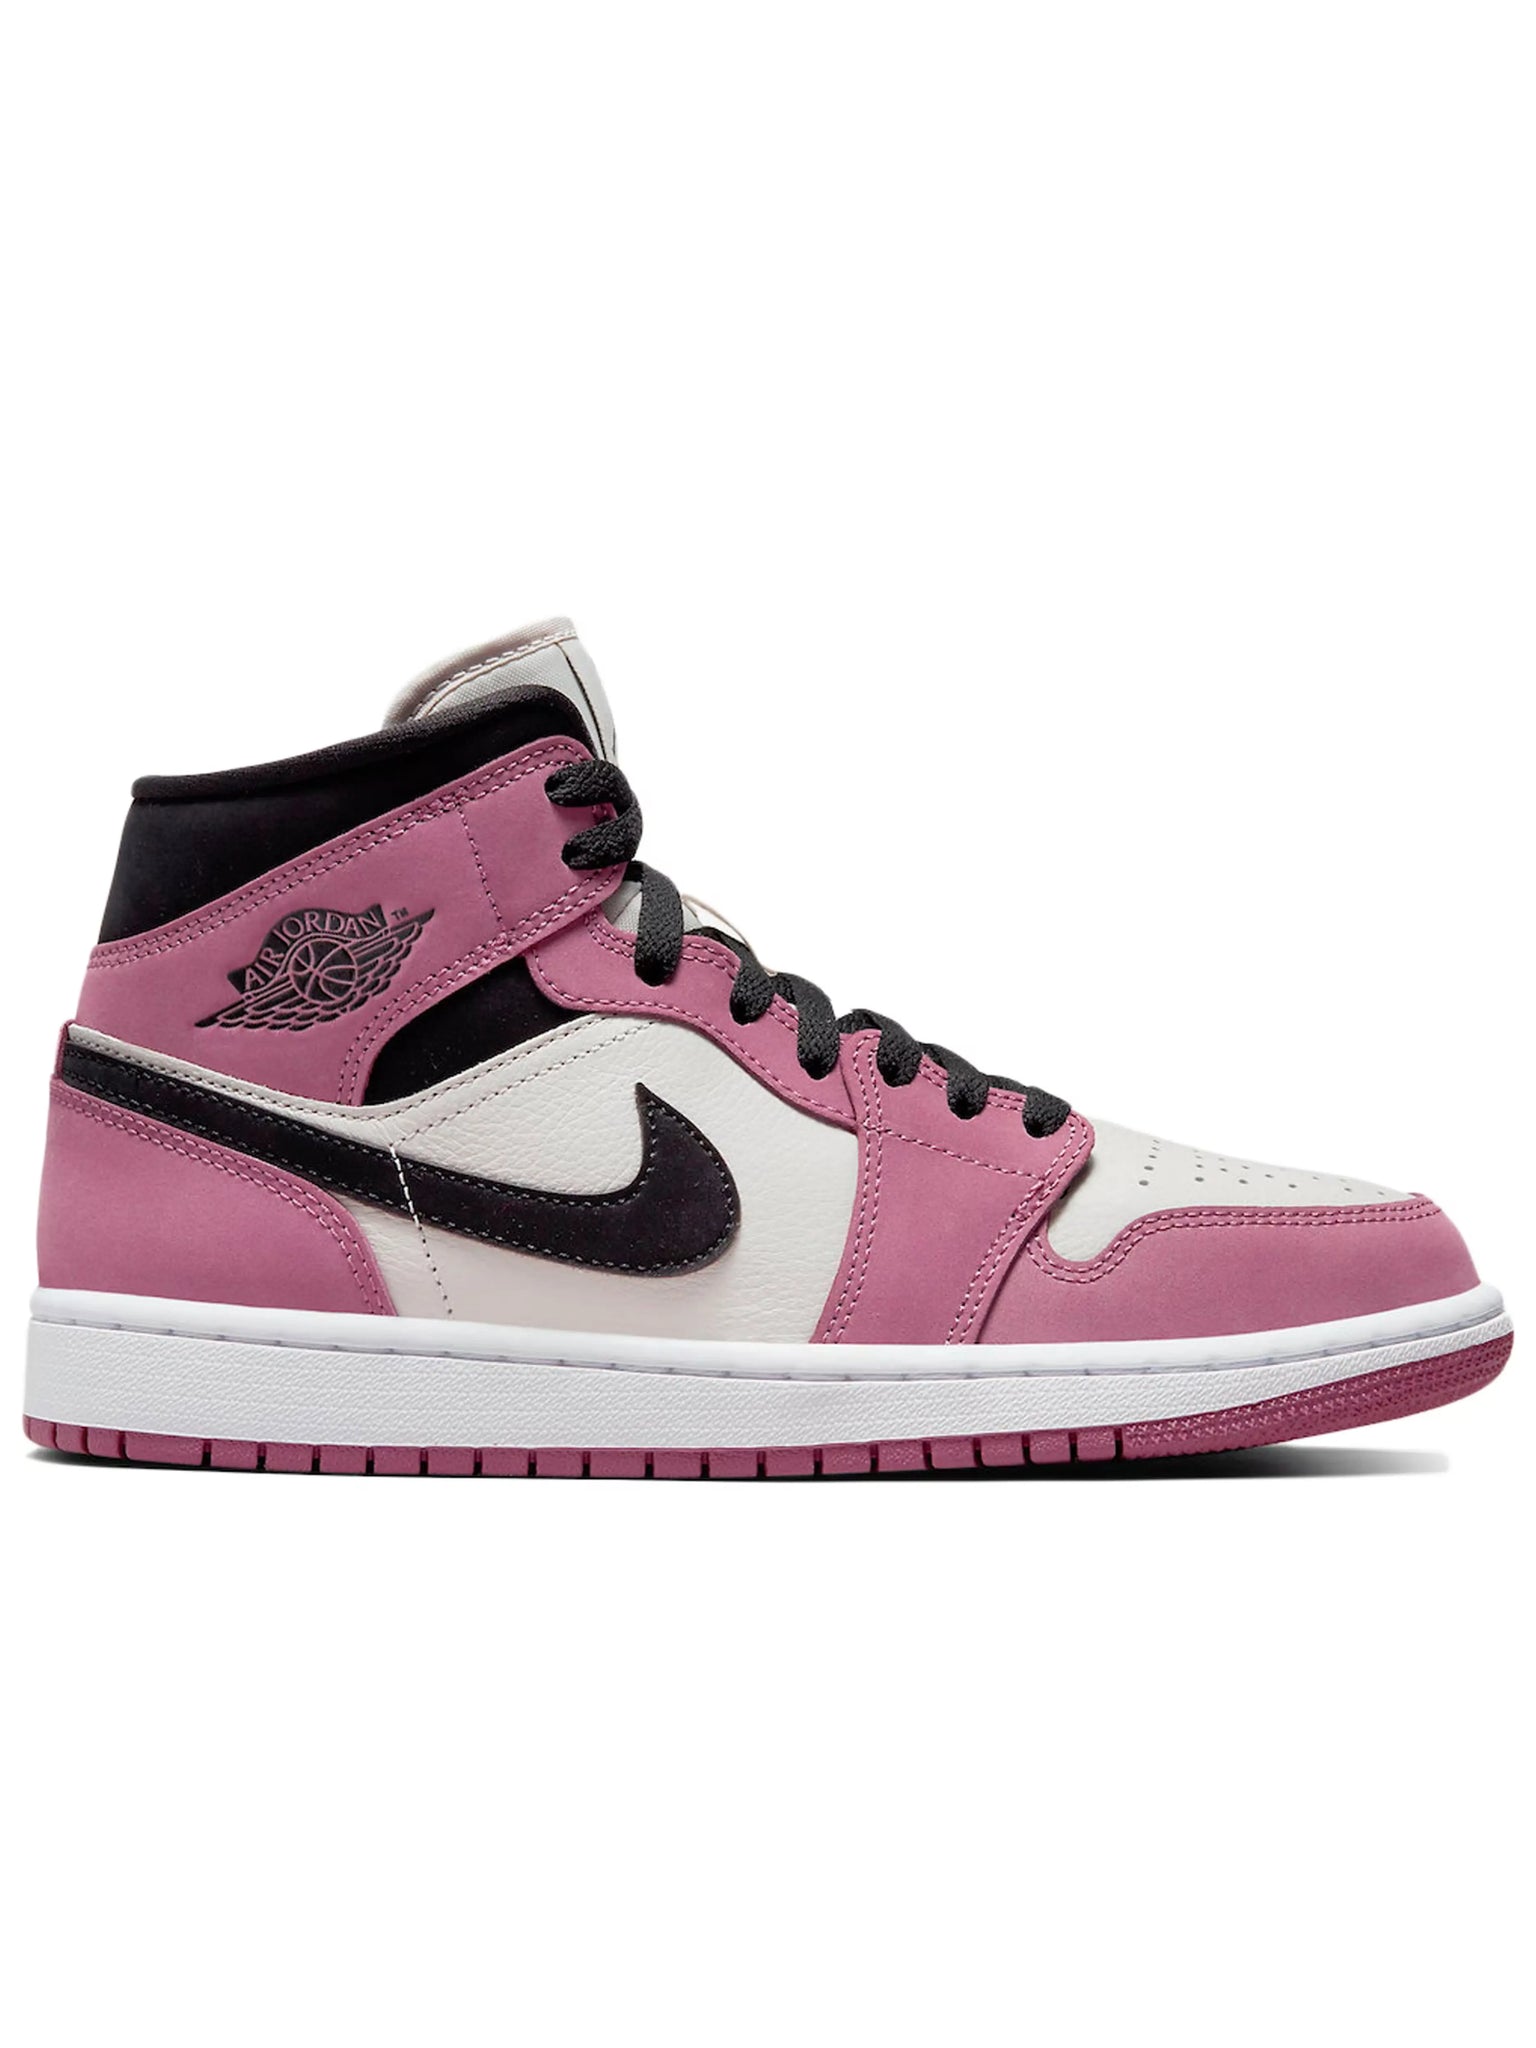 Nike Air Jordan 1 Mid Berry Pink (W) Prior